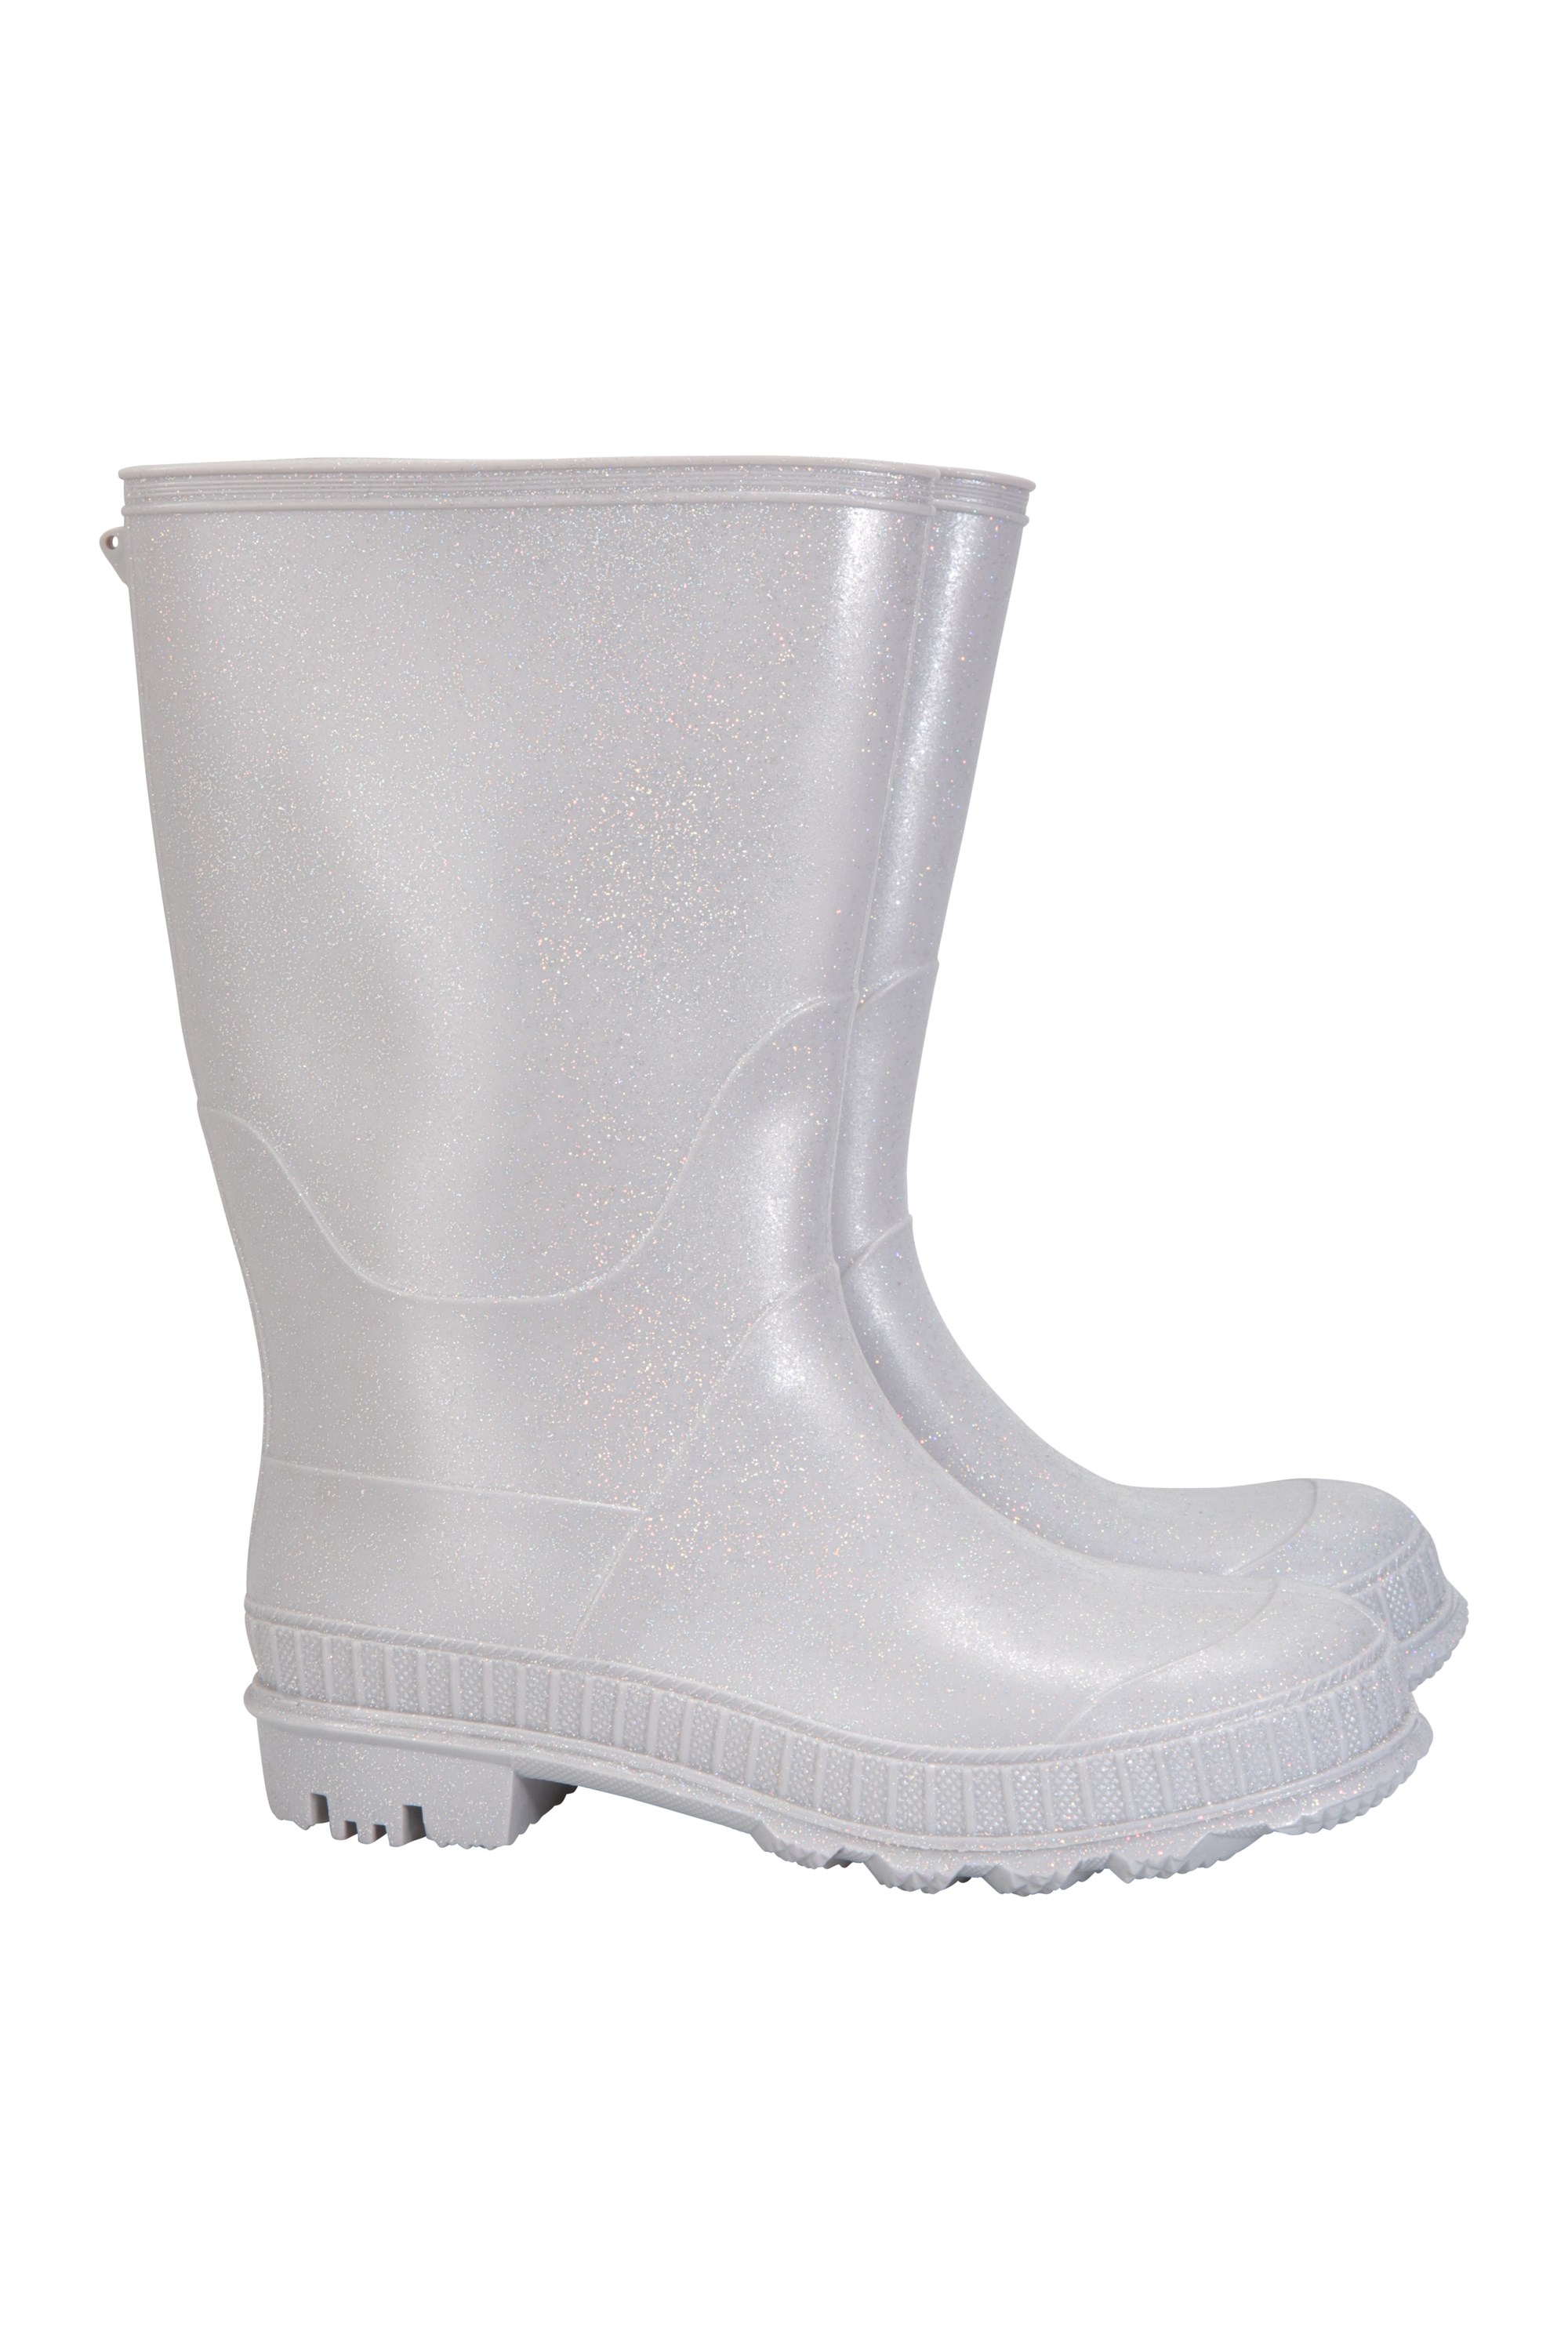 Mountain Warehouse Glitter Kids Rain Boots Silver